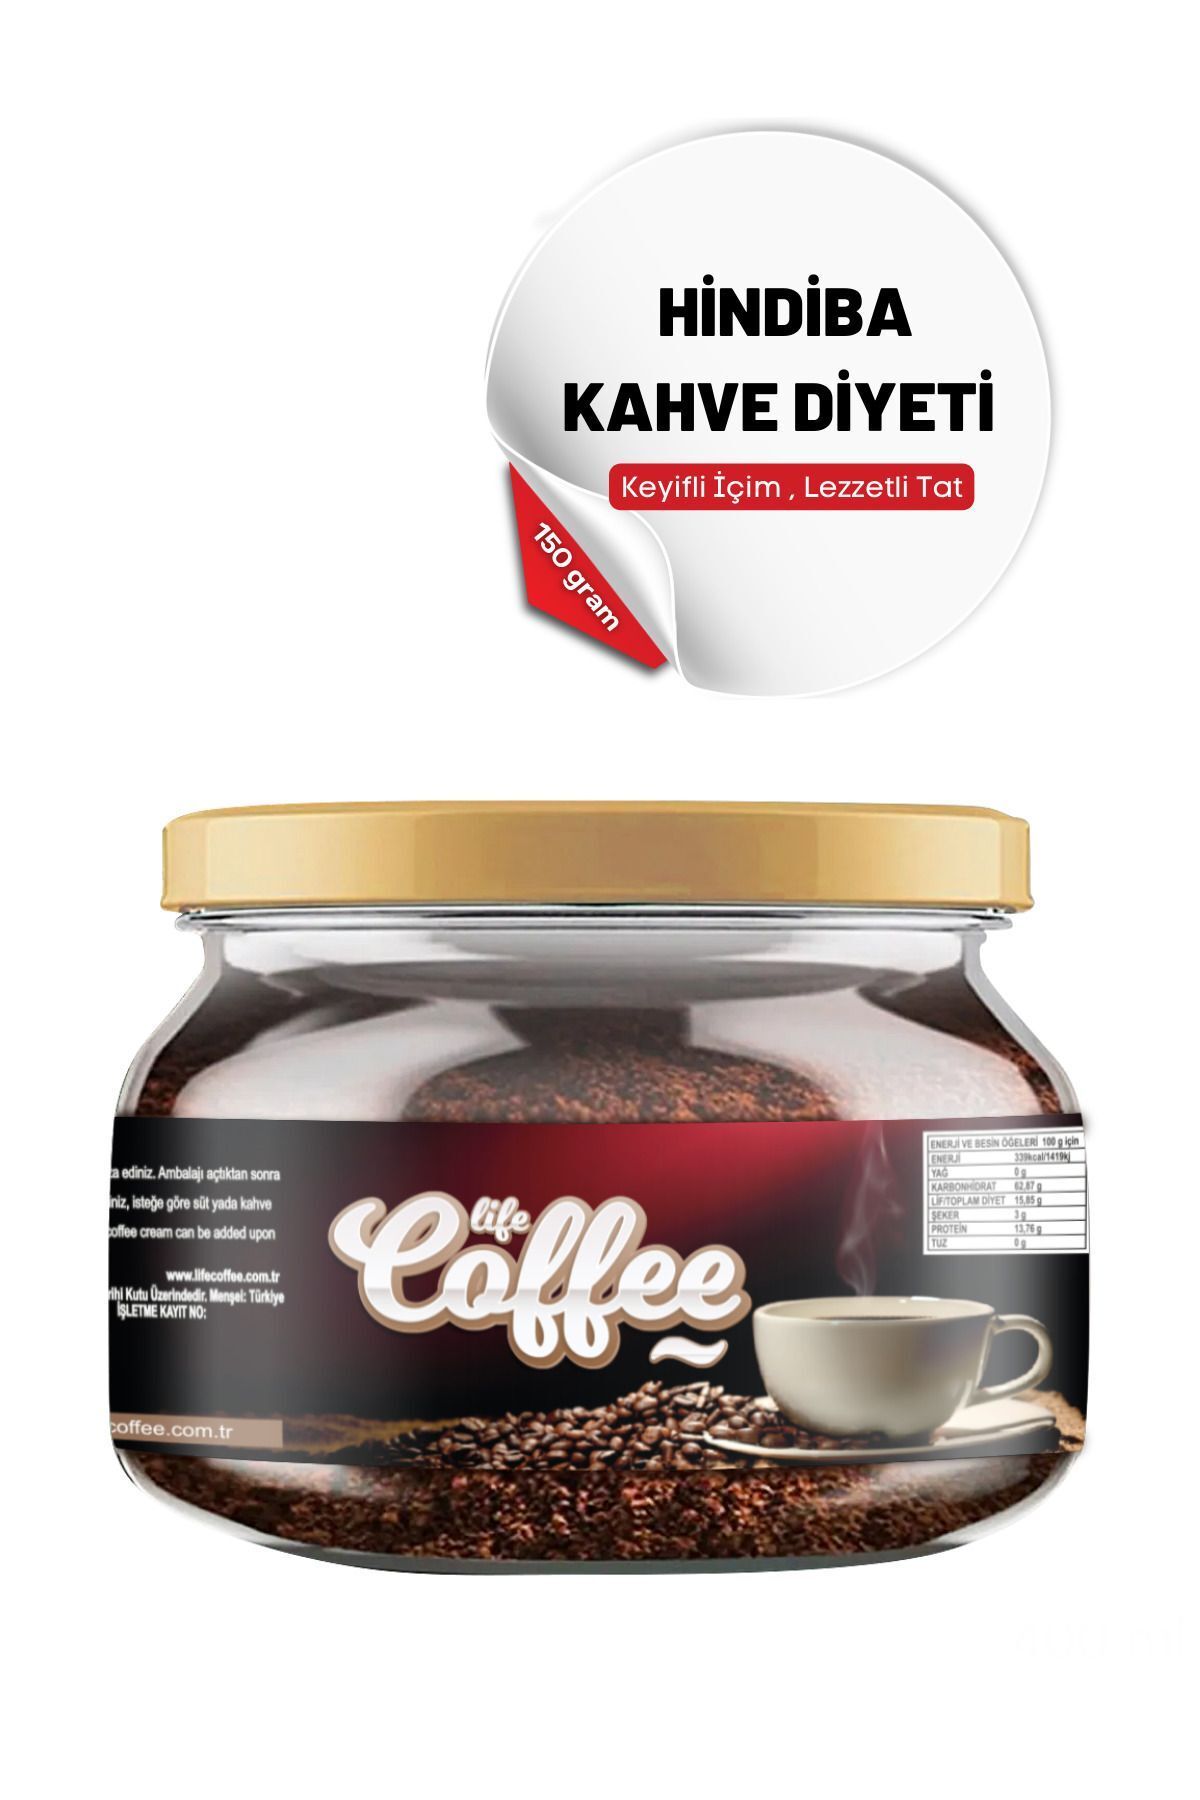 Lifecoffee Kahve Diyeti , Hindiba Kahvesi , Detox Kahve , 150 gram , Diyet Kahve